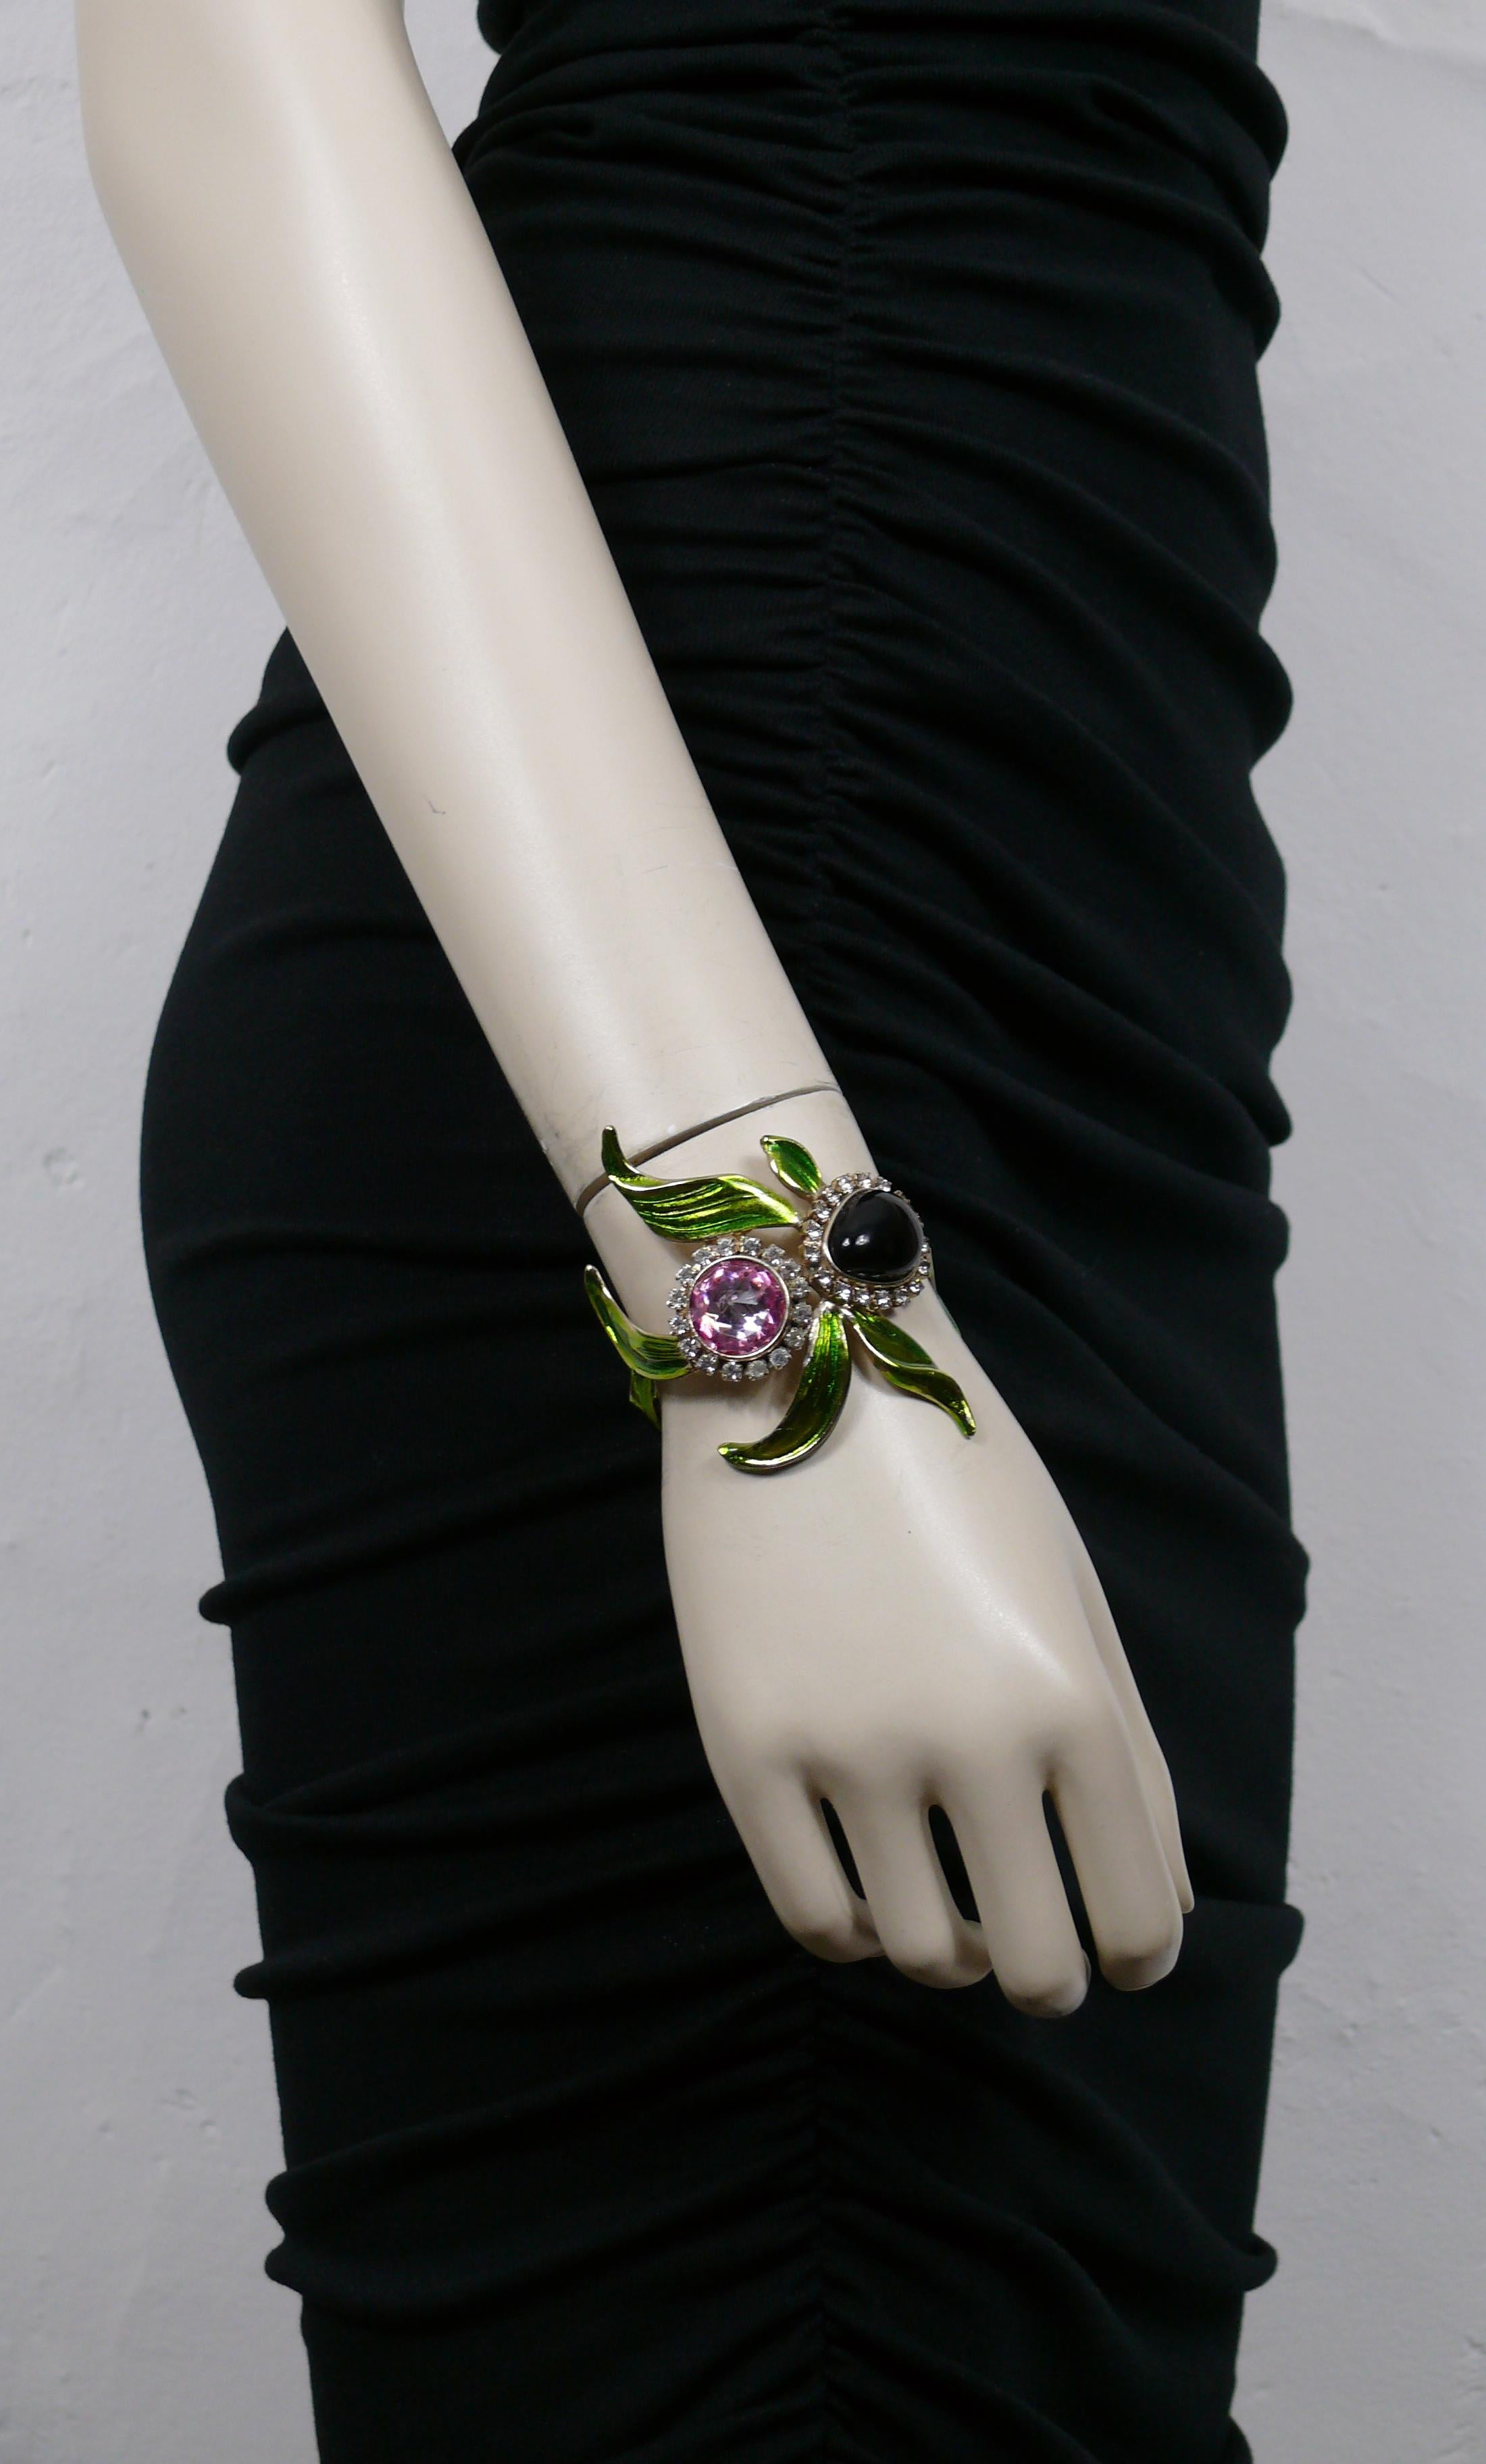 Paire de bracelets manchettes orchidée Yves SAINT LAURENT by TOM FORD, ornés d'un cabochon en verre violet foncé, de cristaux roses et transparents, de feuilles en émail vert dans une monture en or léger.

YVES SAINT LAURENT Printemps-Été 2004 